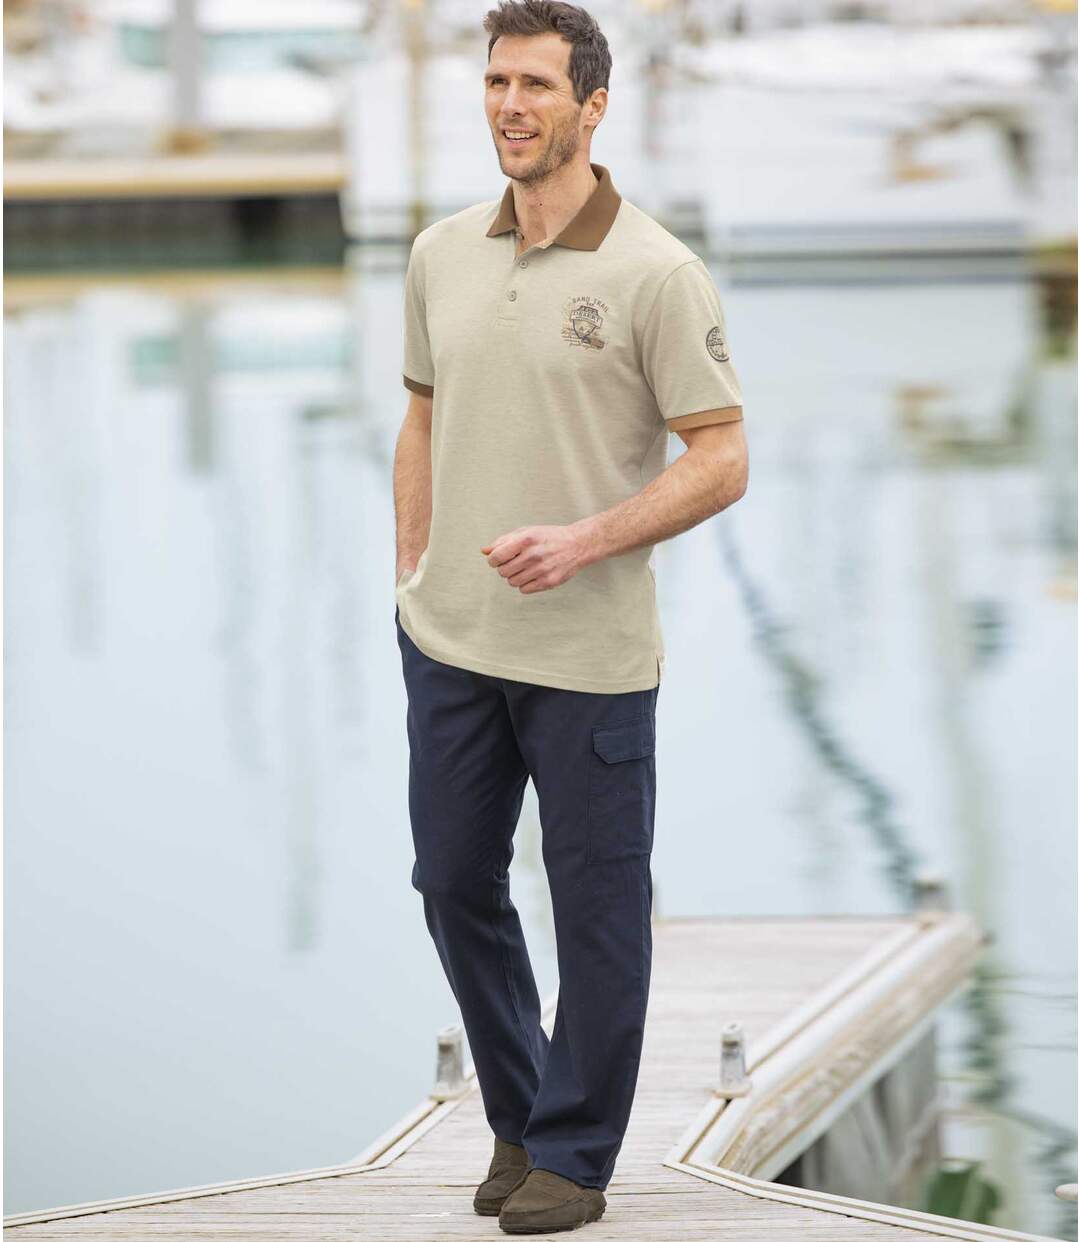 Pack of 2 Men's Cargo Pants - Beige Navy Atlas For Men